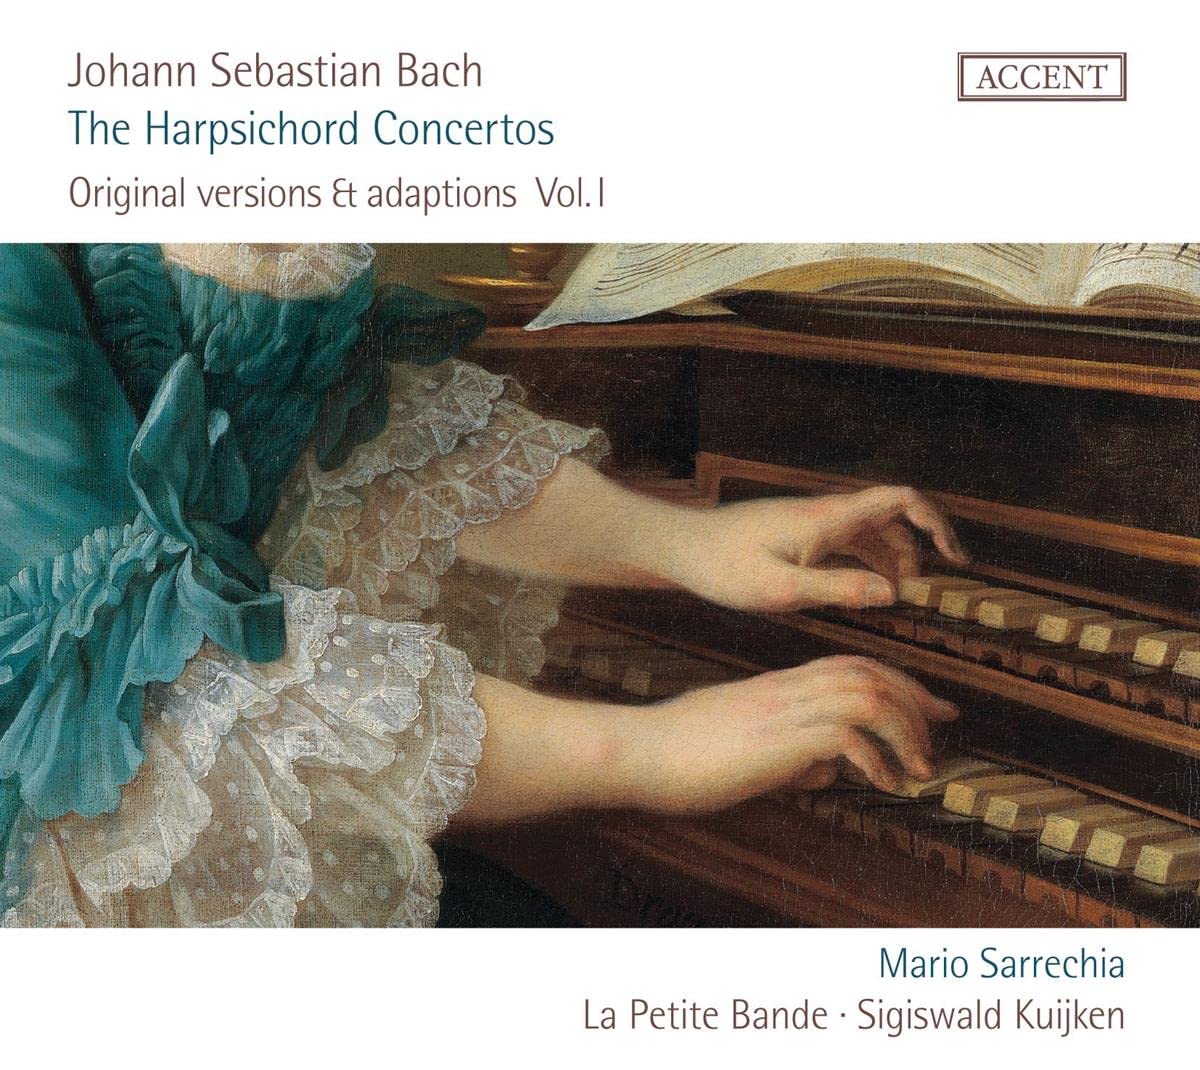 Bach: Harpsichord Concertos, Original Versions & Adaptations Vol. 1